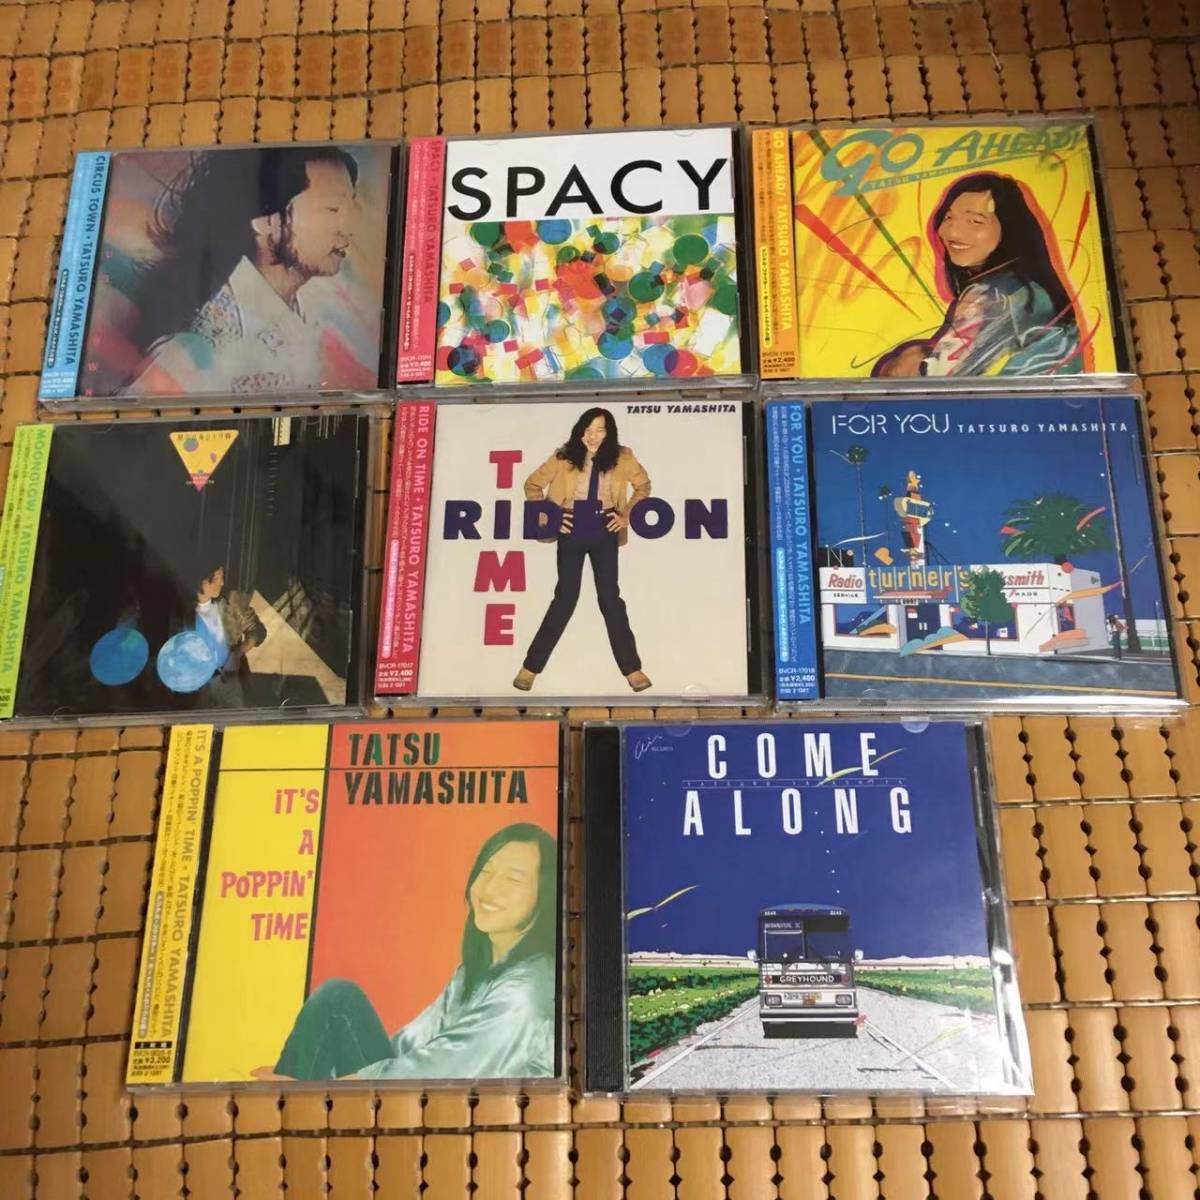 山下達郎 『THE RCA/AIR YEARS CD BOX 1976-1982』 8タイトル9枚組CD 特典盤/帯付 TATSURO YAMASHITA _画像5